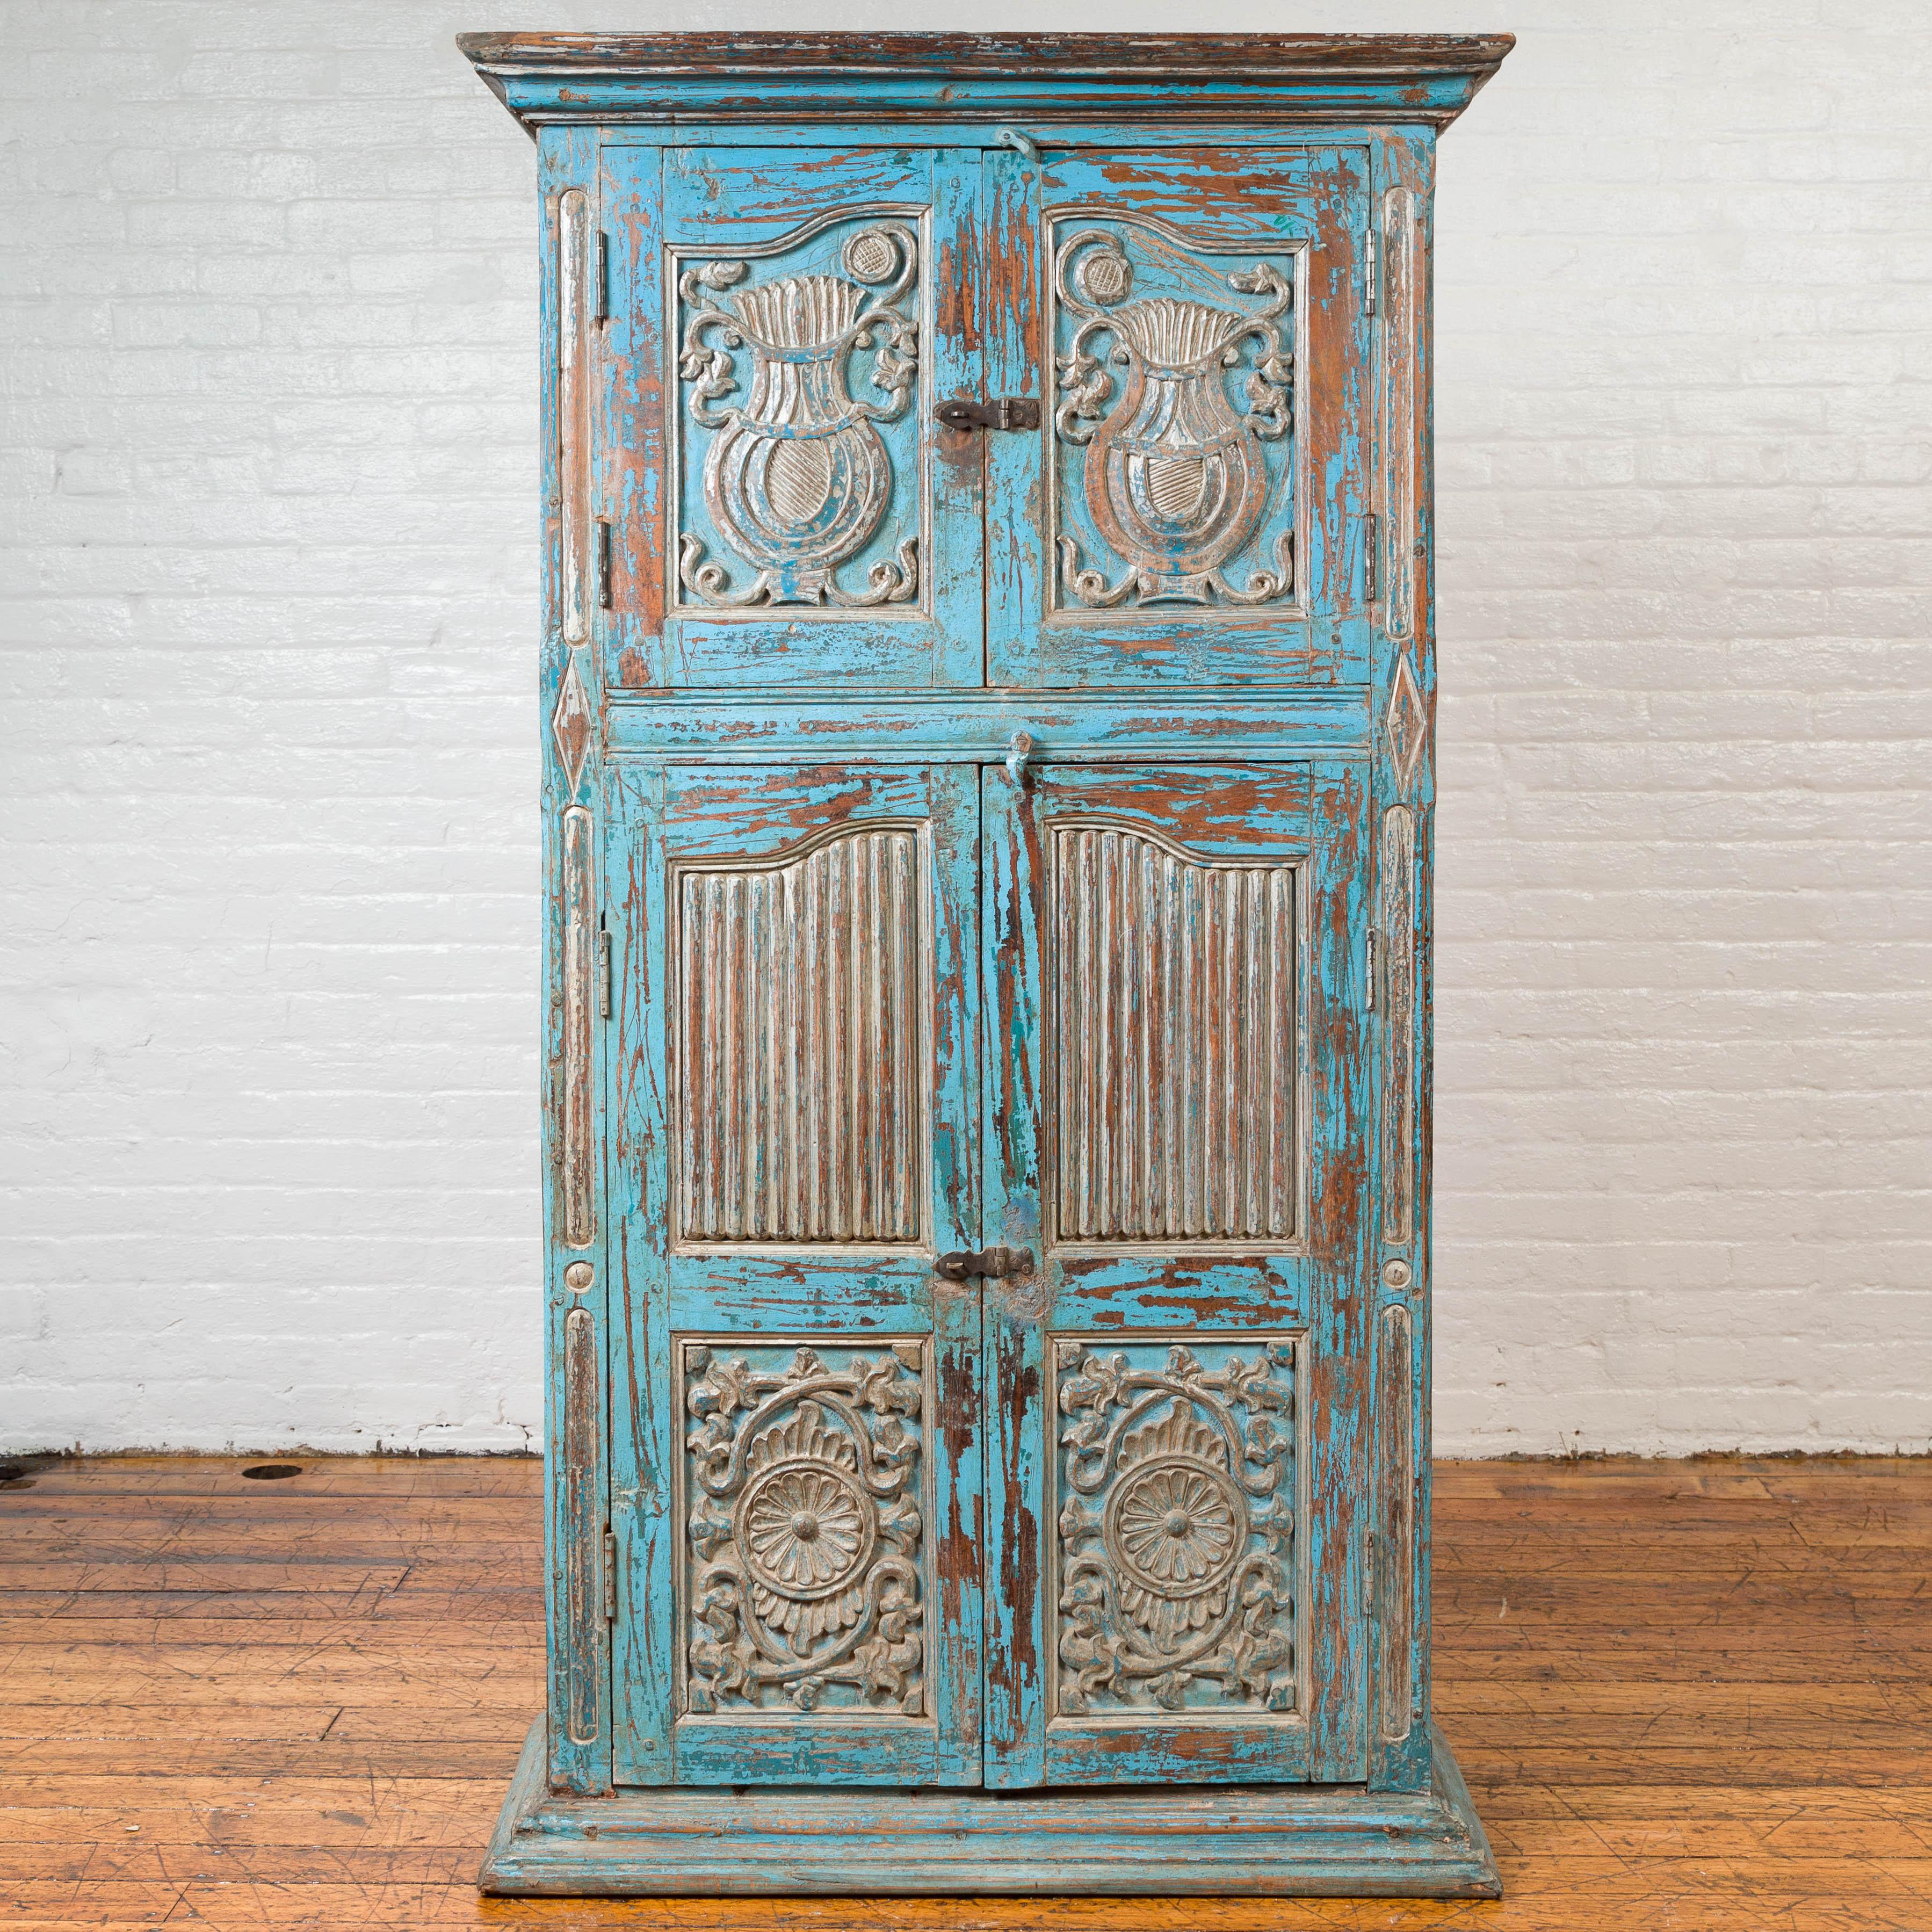 Ancienne armoire indienne à deux sections en bois peint en bleu avec des panneaux sculptés. Doté d'une silhouette haute et d'une finition peinte en bleu à la main présentant un aspect joliment patiné, ce meuble haut est composé de deux sections. Une